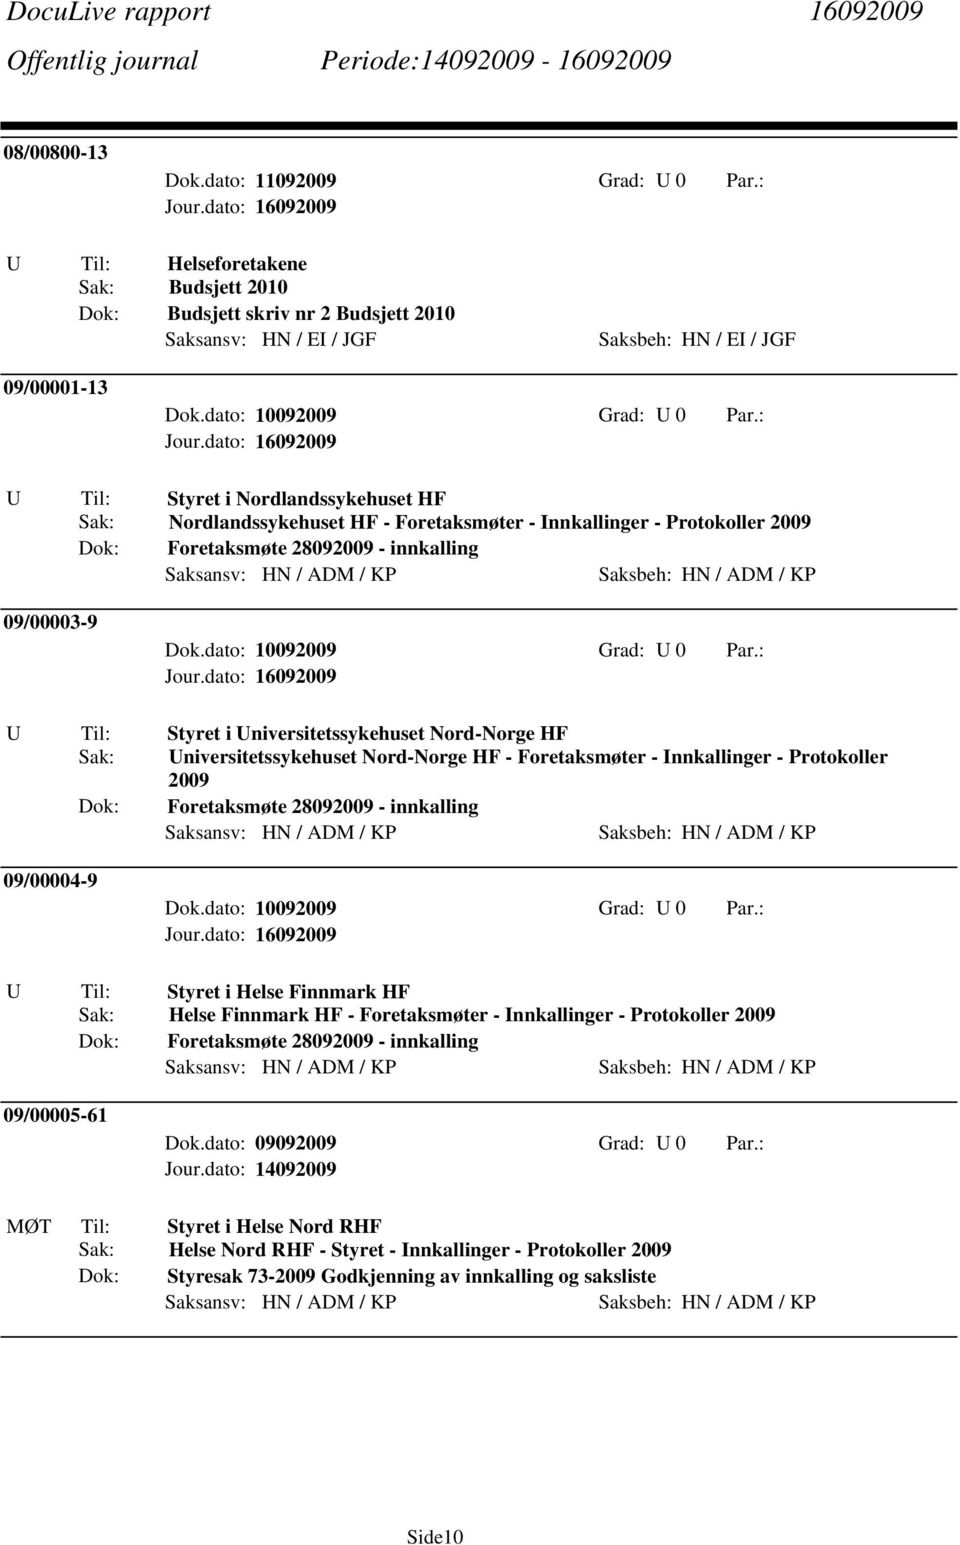 Innkallinger - Protokoller 2009 Foretaksmøte 28092009 - innkalling 09/00003-9 Styret i niversitetssykehuset Nord-Norge HF niversitetssykehuset Nord-Norge HF - Foretaksmøter - Innkallinger -